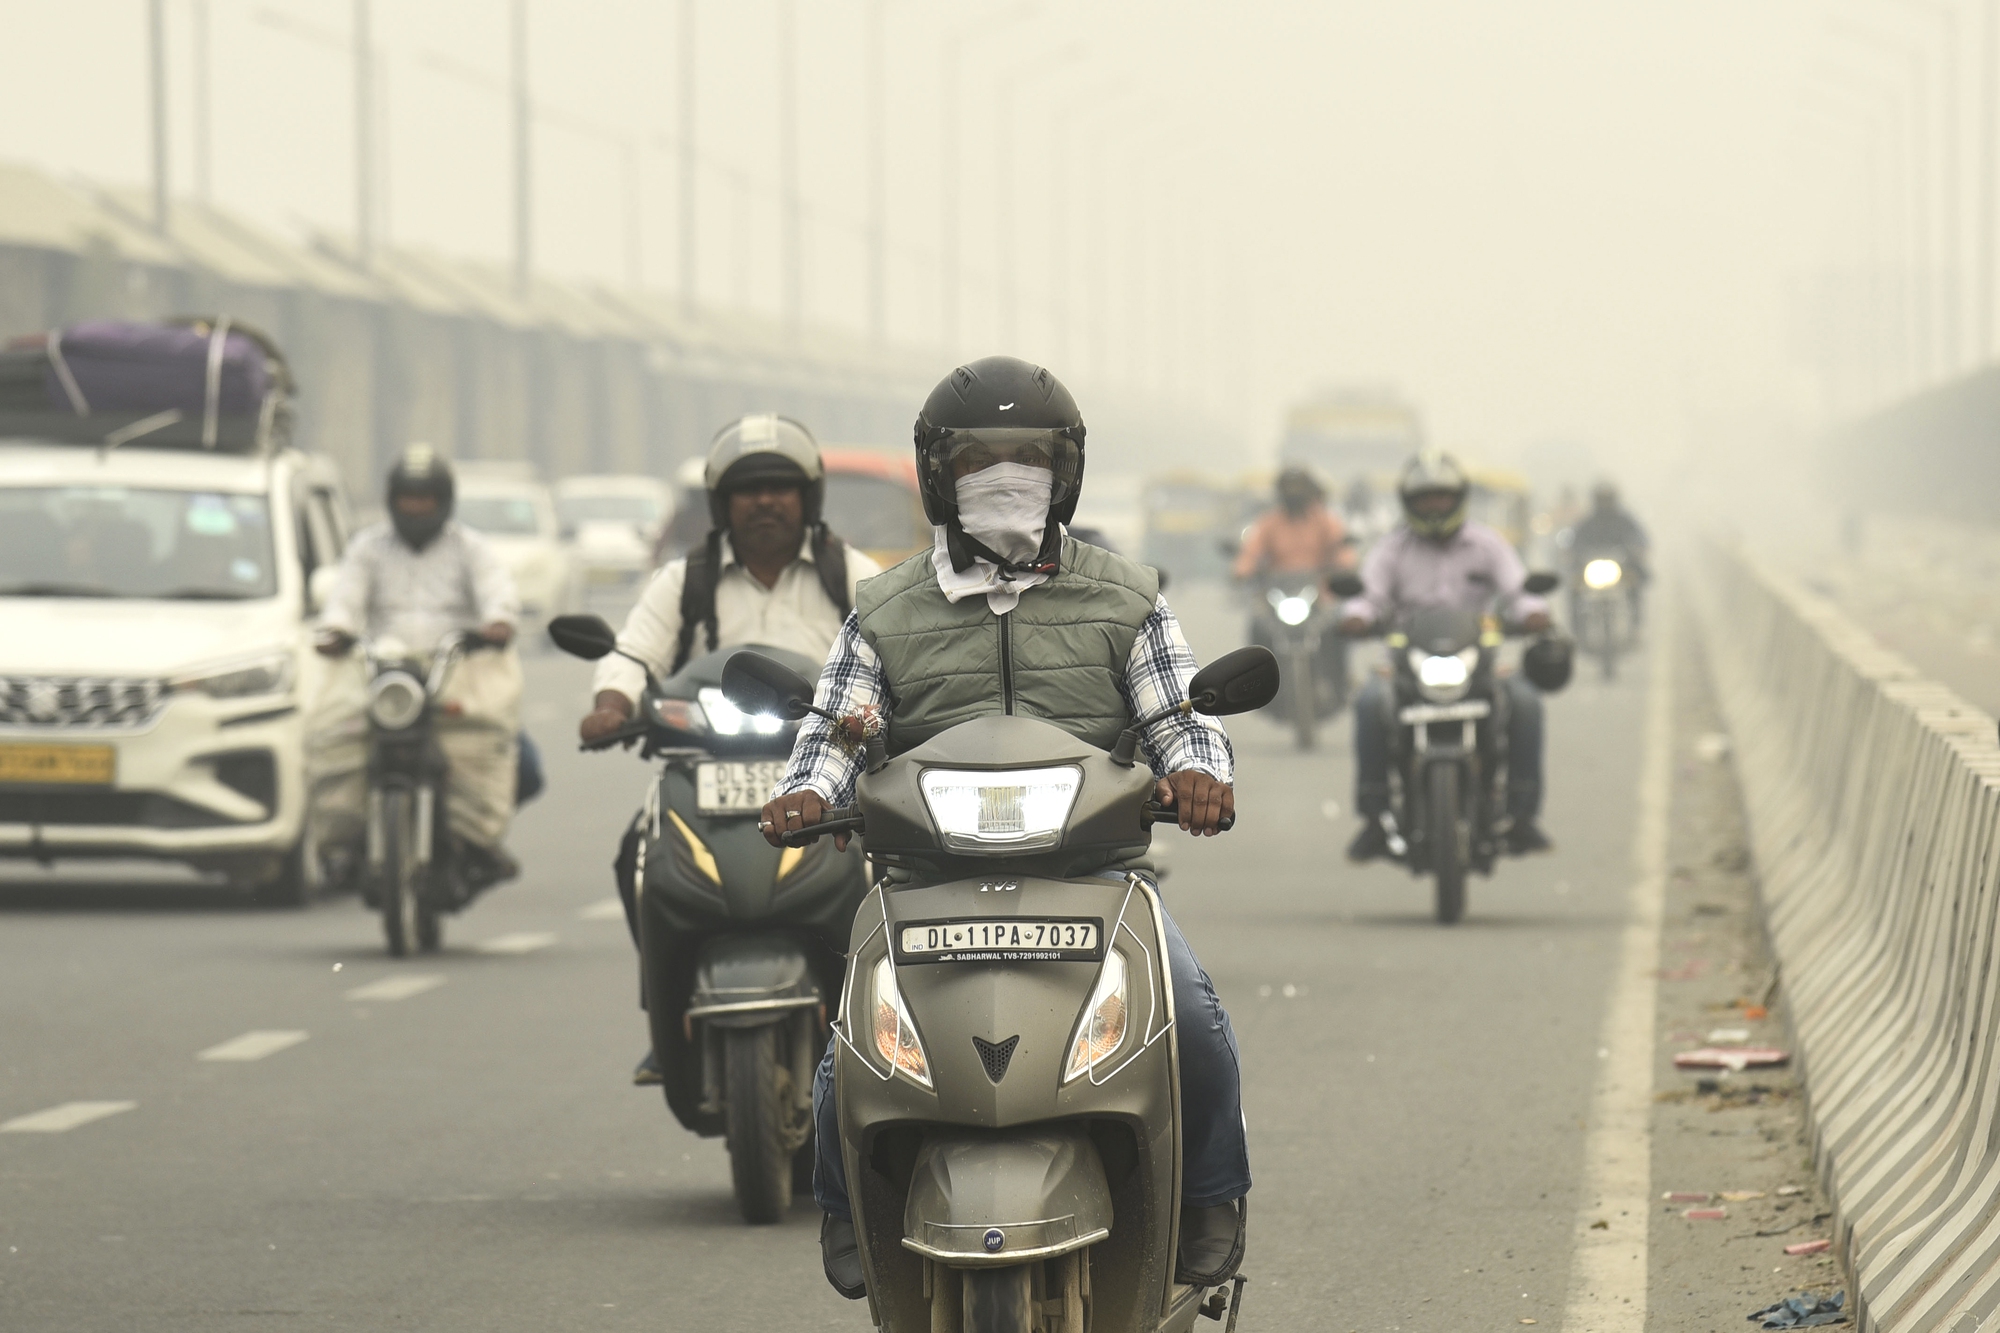 Khói mù bao trùm New Delhi, ô nhiễm gấp 100 lần ngưỡng an toàn của LHQ  - Ảnh 1.